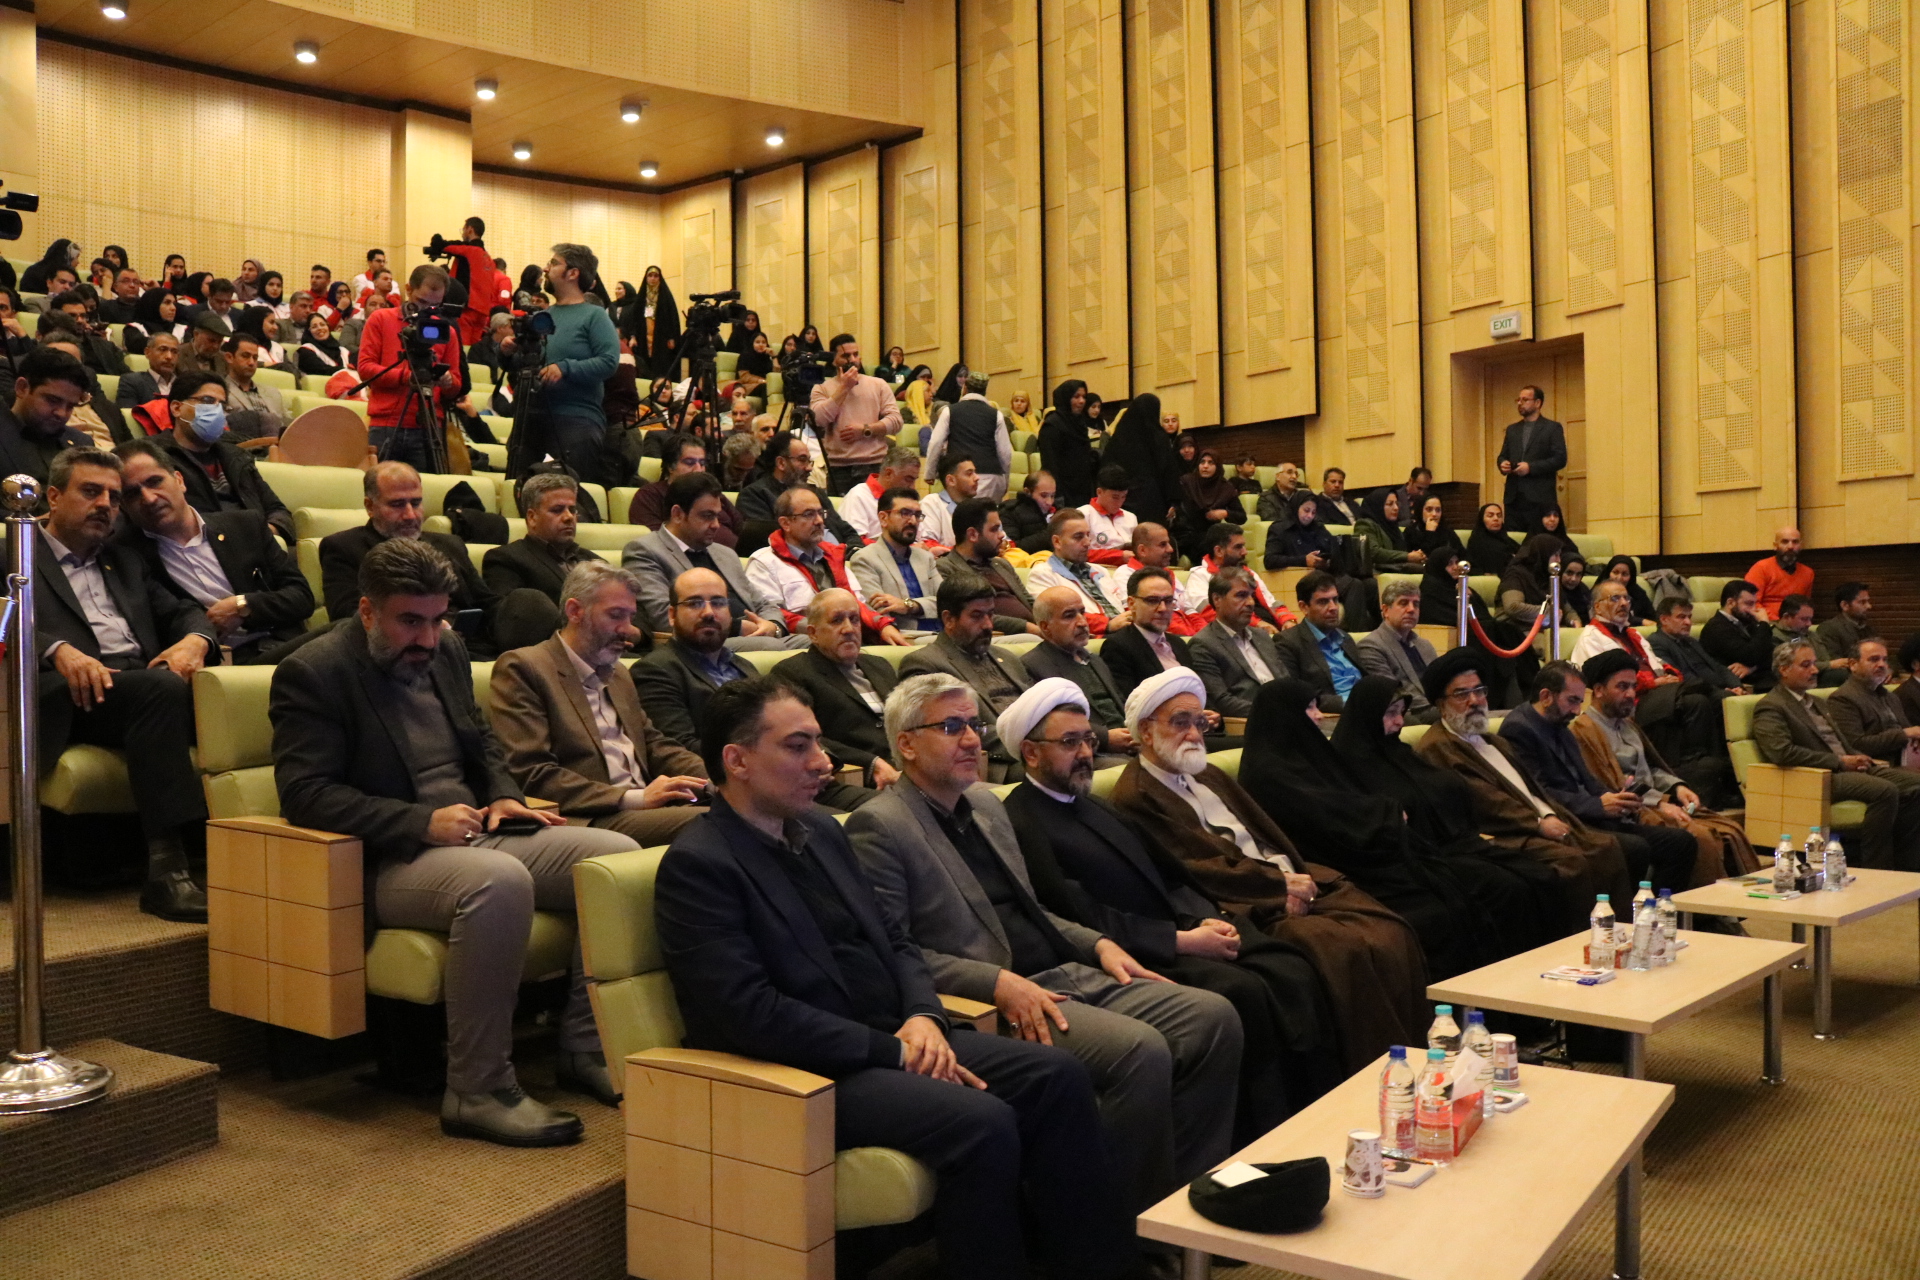 غرفه های کانون در دومین رویداد فرهنگی "بر آستان آفتاب" در خمین به کار خود پایان داد 